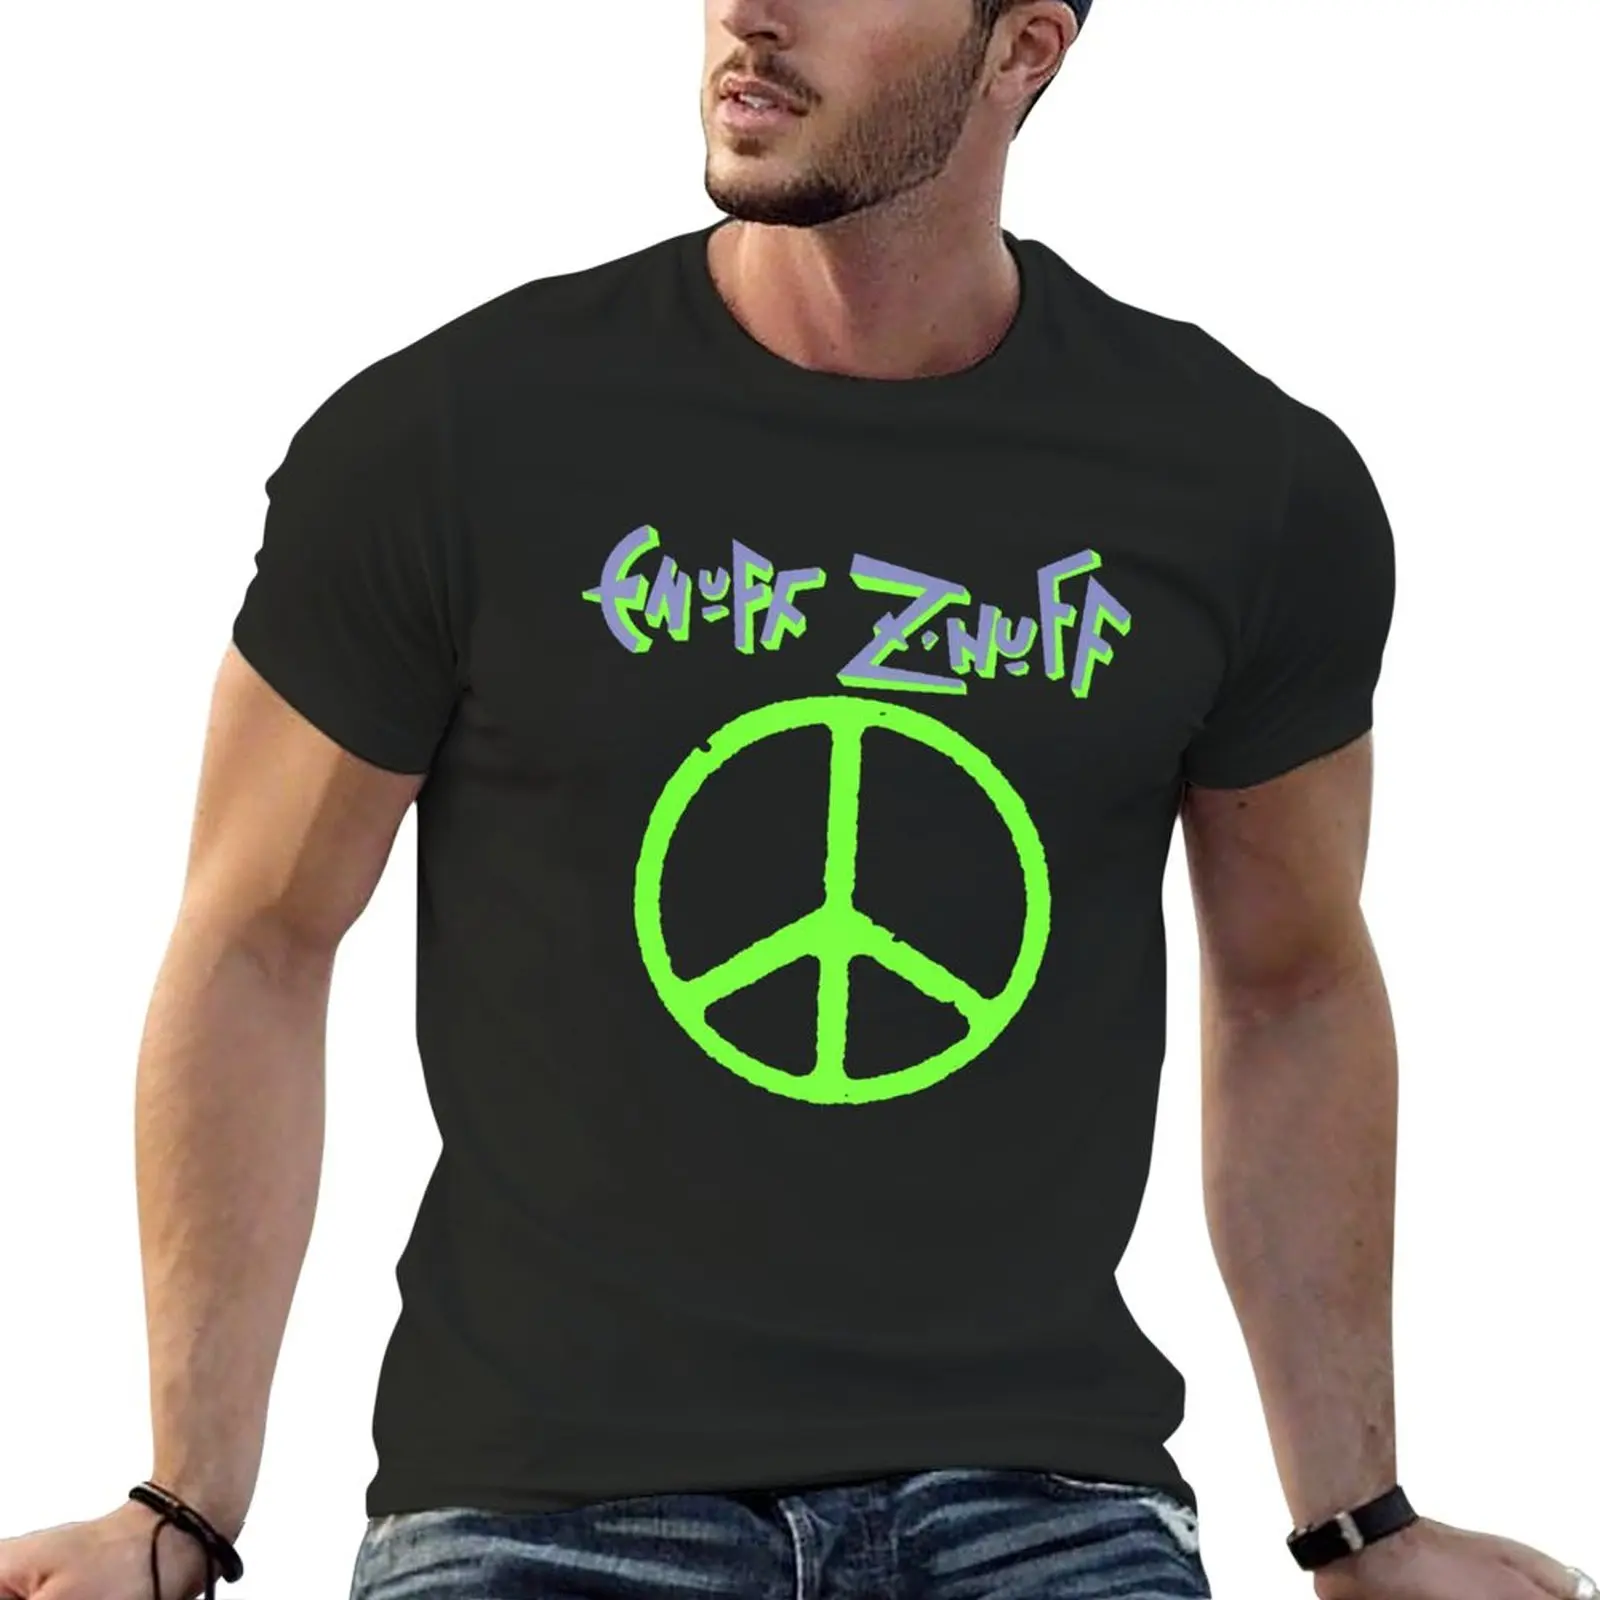 

Новинка, футболка Enuff z' nuff с логотипом американской рок-группы, дизайнерская футболка, черные футболки, футболки с коротким рукавом, мужские футболки